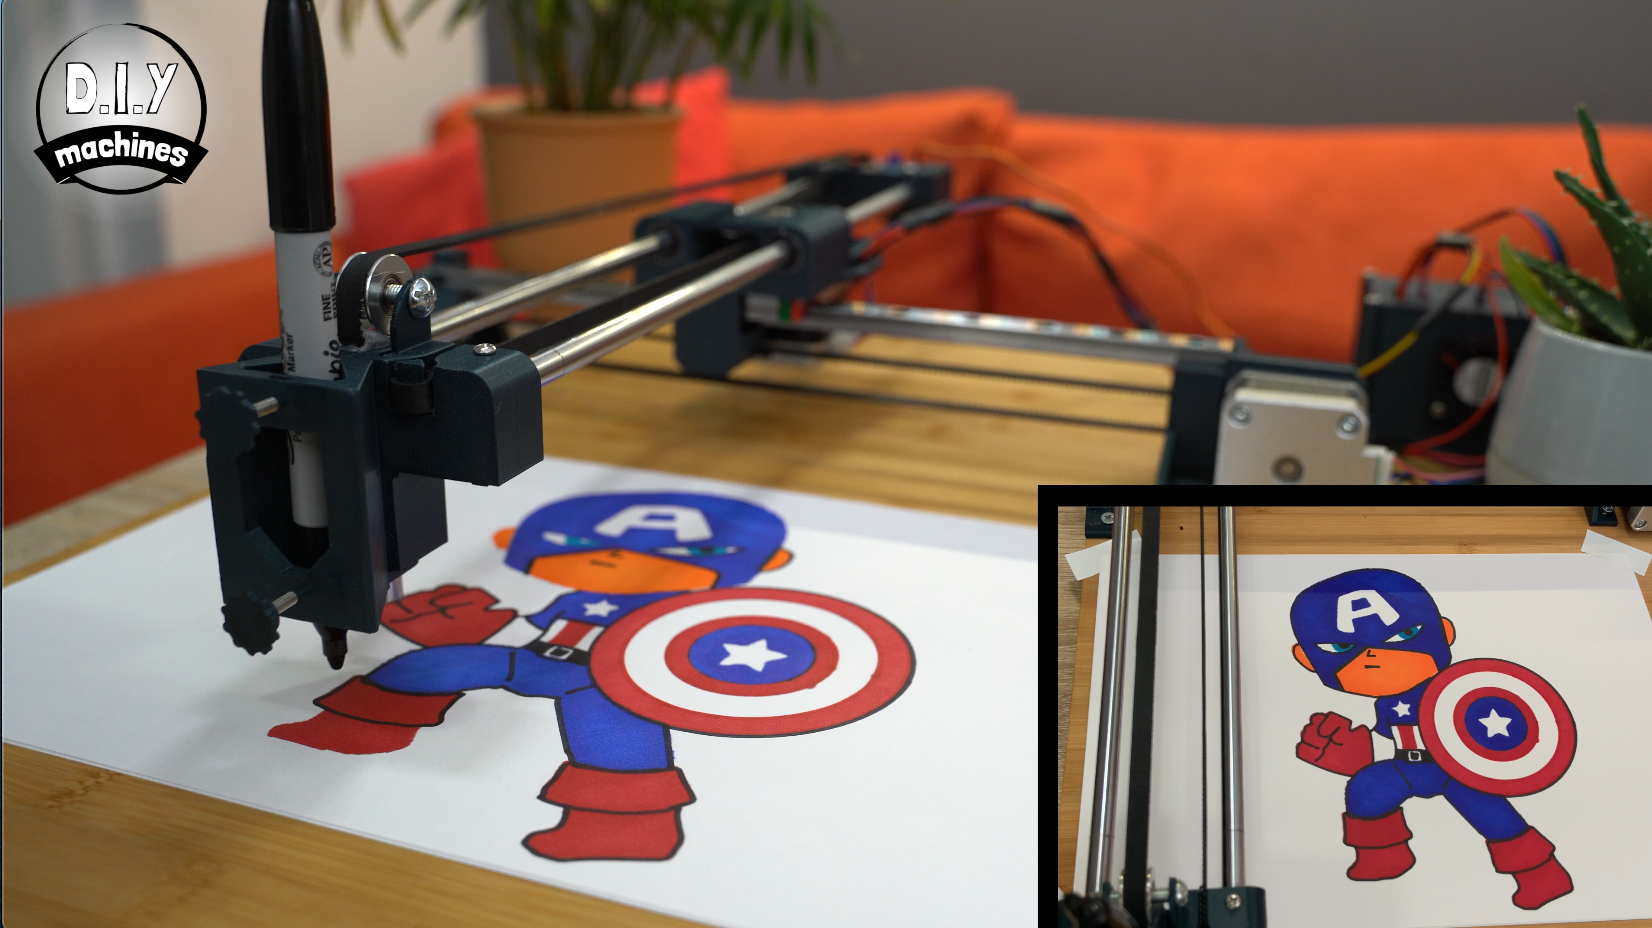 DIY XY Plotter 2500MW Drawbot Pen Drawing Machine CNC Intelligent Robot  Drawing | eBay